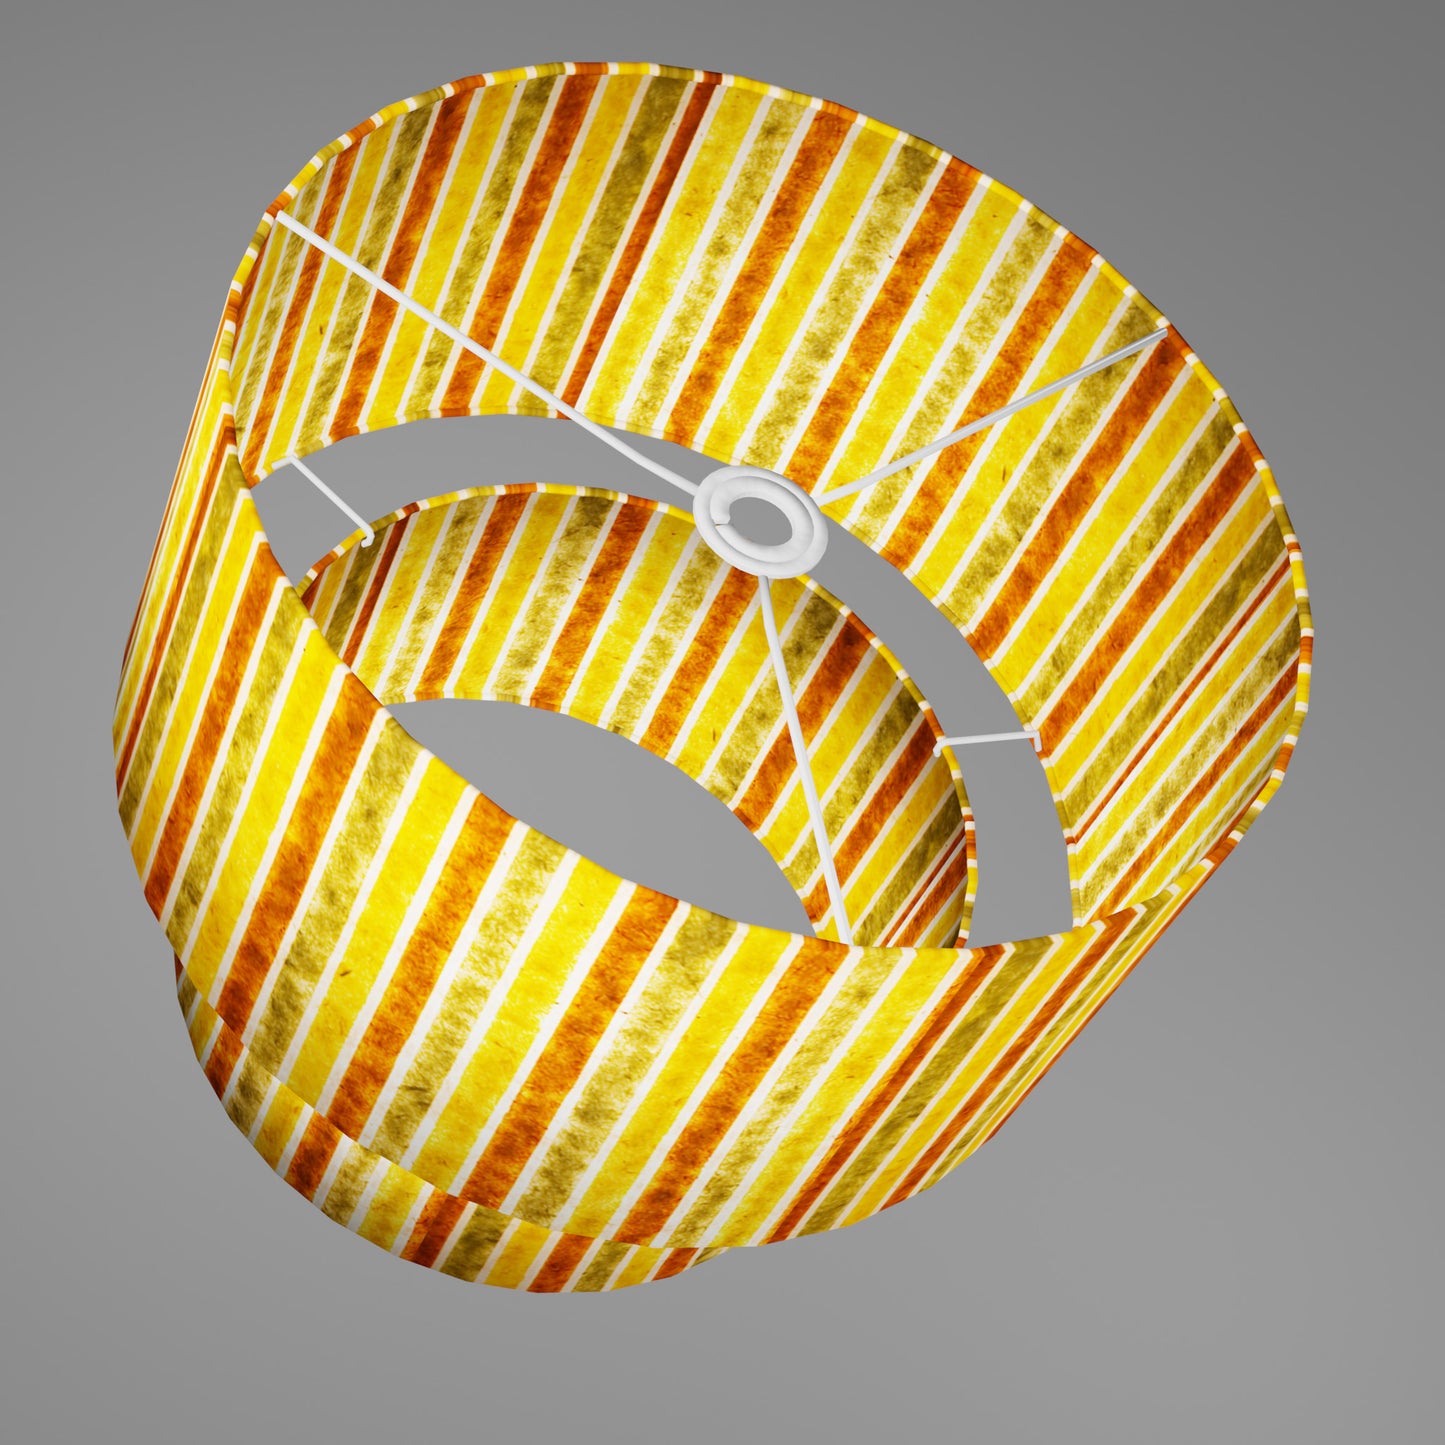 2 Tier Lamp Shade - P06 - Batik Stripes Autumn, 40cm x 20cm & 30cm x 15cm